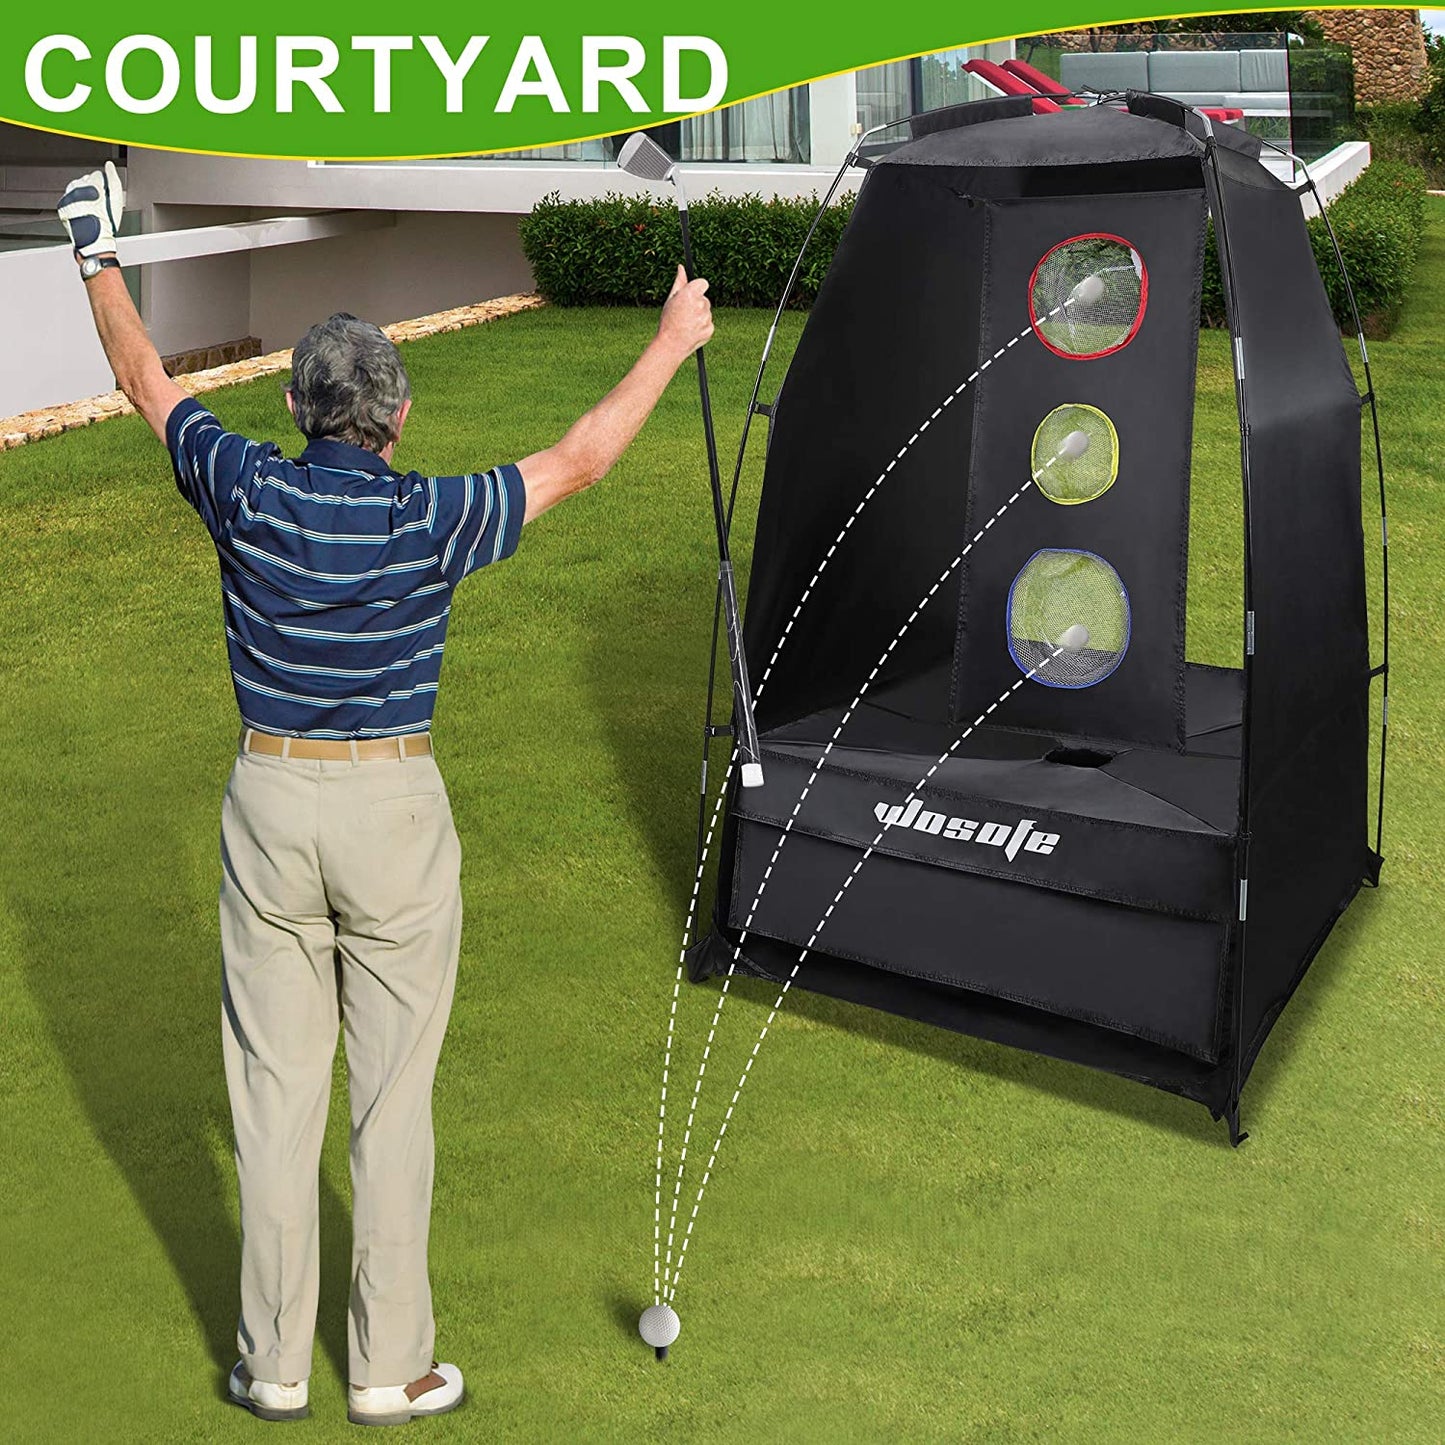 Wosofe Golf üben das Schlagnetz 3,8 x 6,5 Fuß (ca. 9,1 x 16,5 Meter) fahren und den Ball professionell schneiden 2 Ziele für den Innen- und Außenbereich im Hinterhof